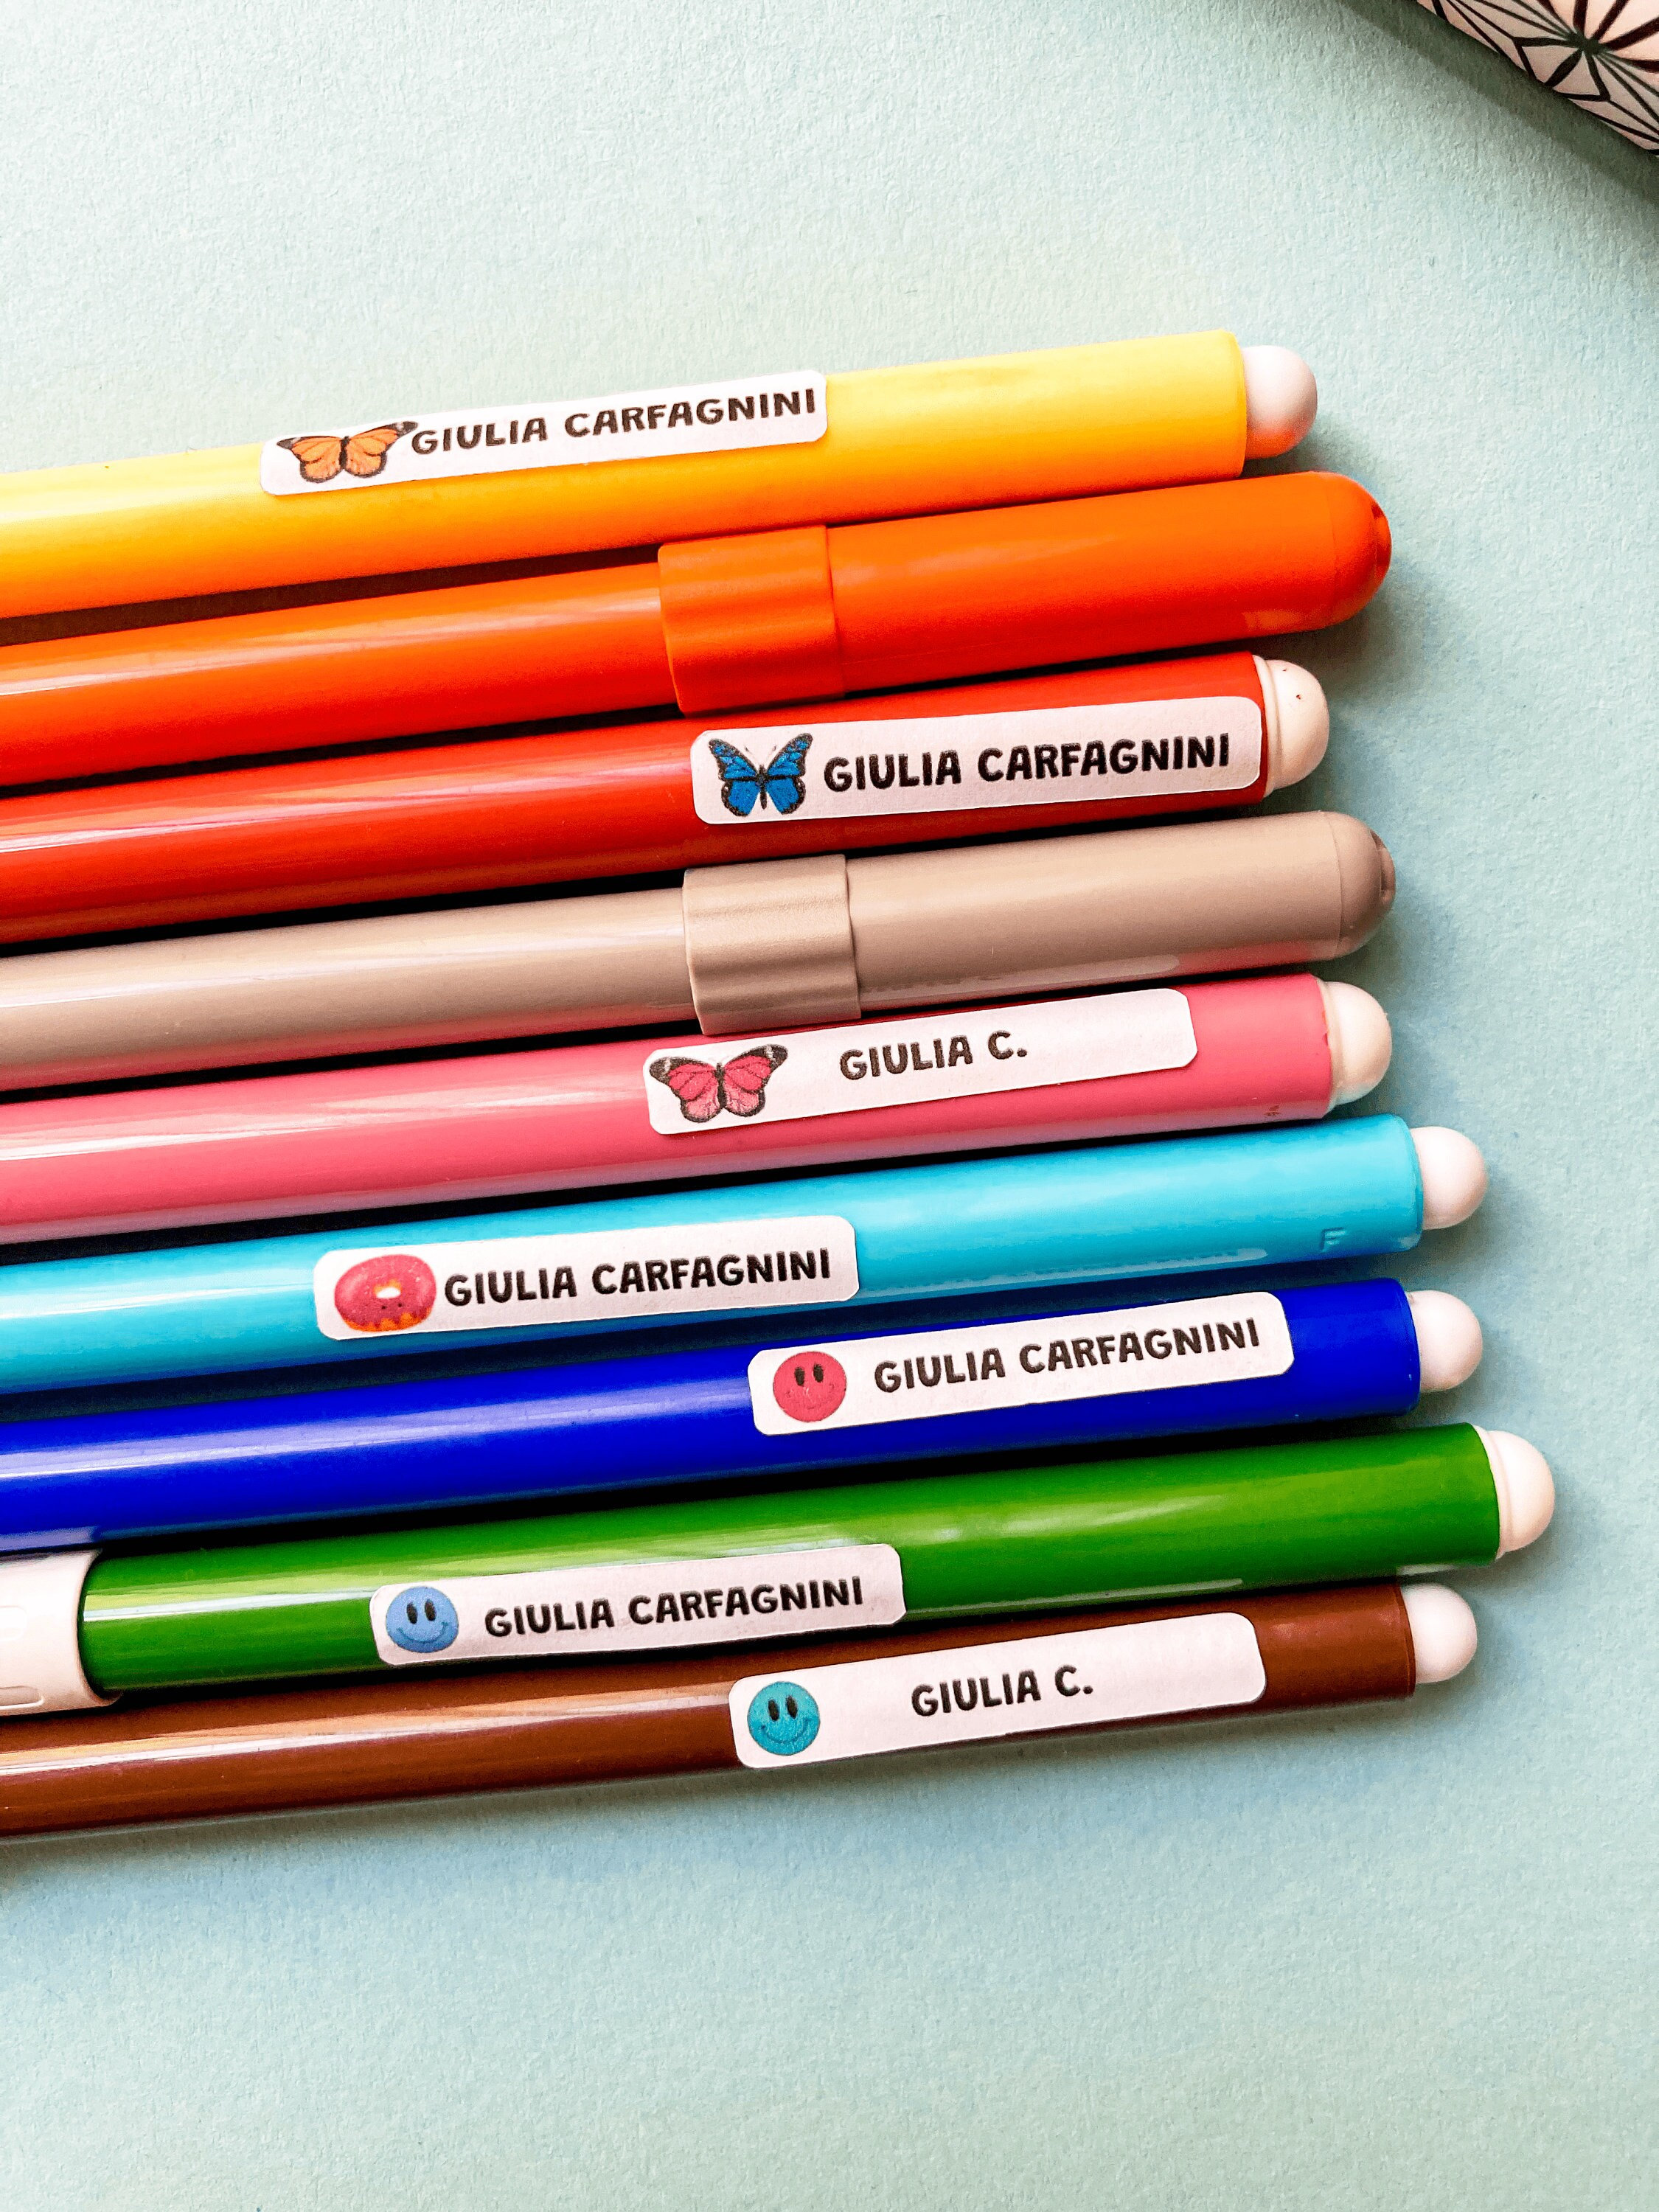 100 Etichette adesive Adesivi in PVC con nome bambino/a scuola matite penne